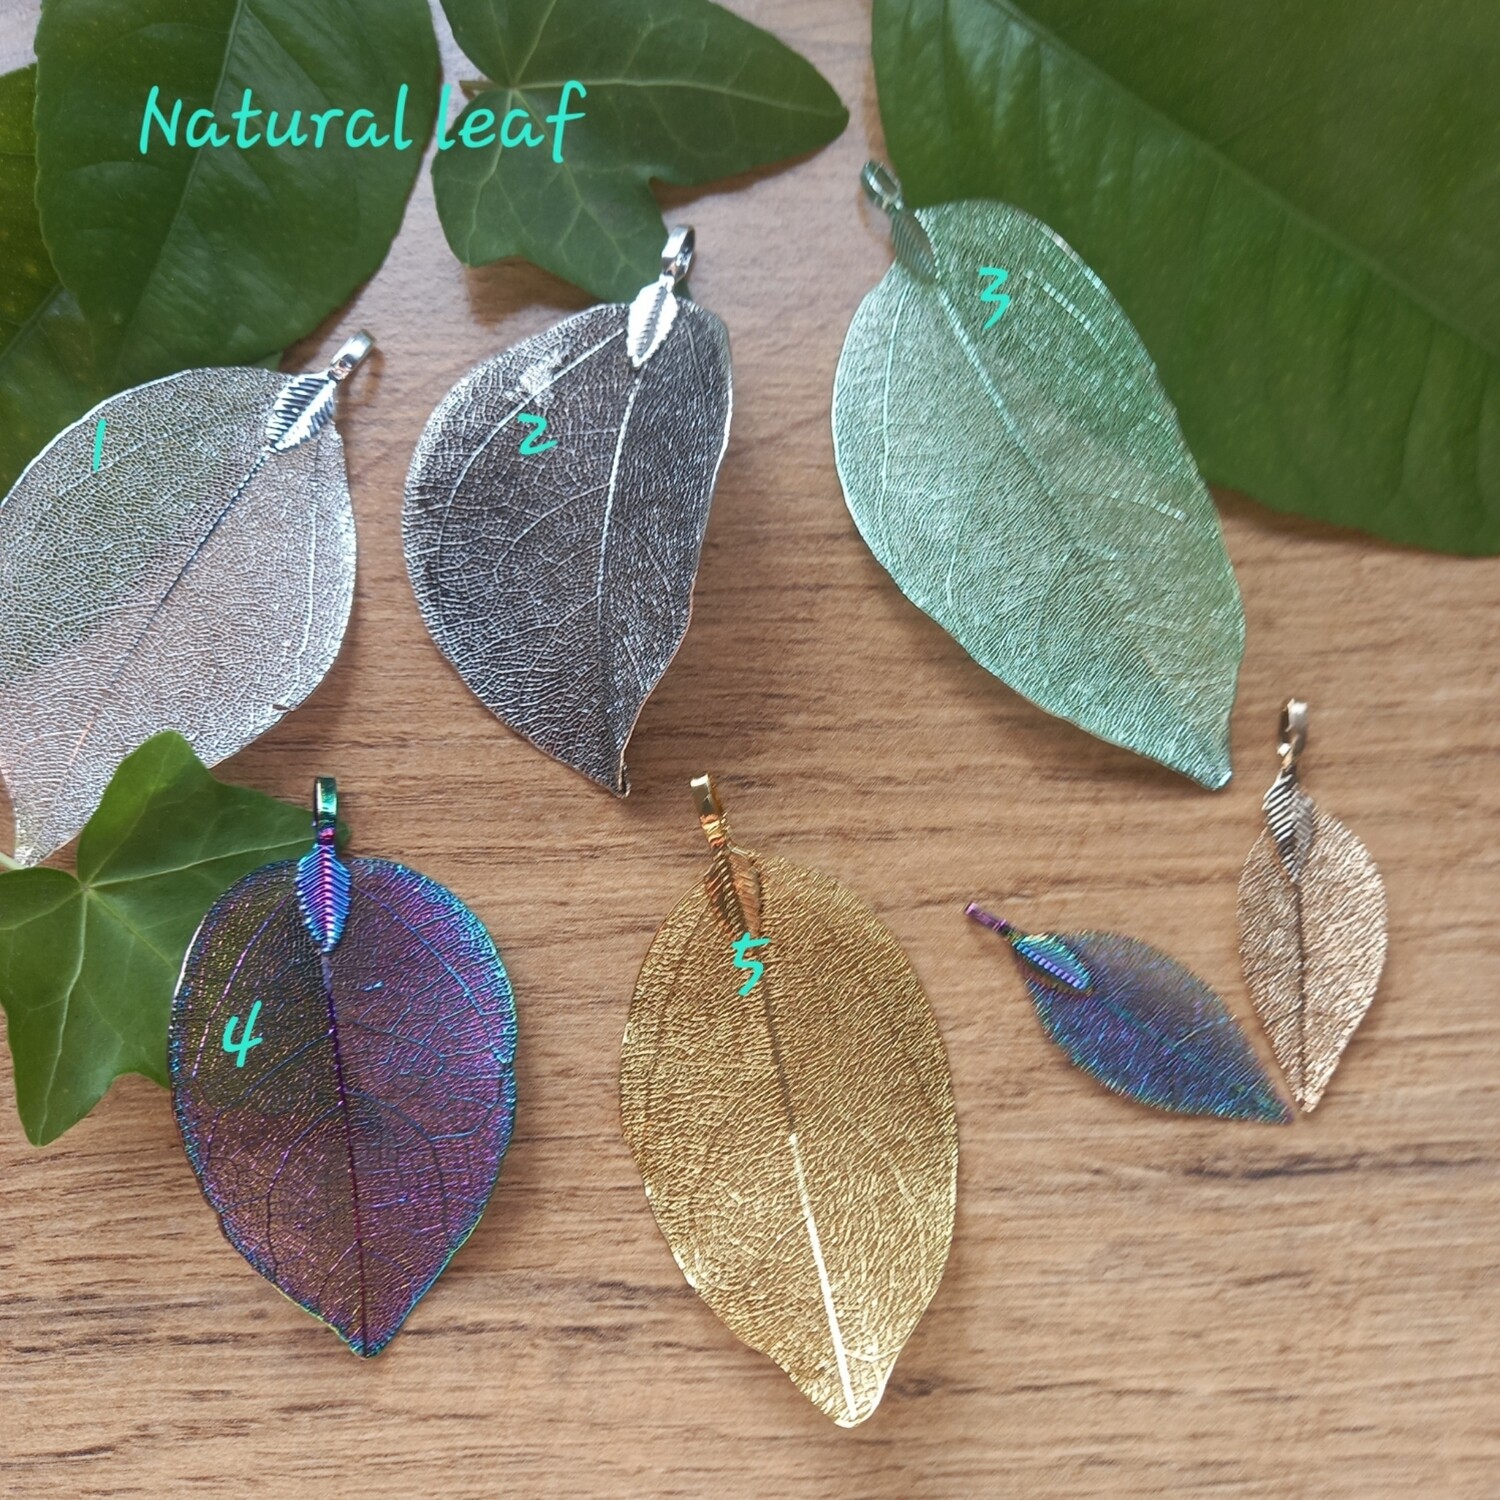 Natural leaf 02 nickel